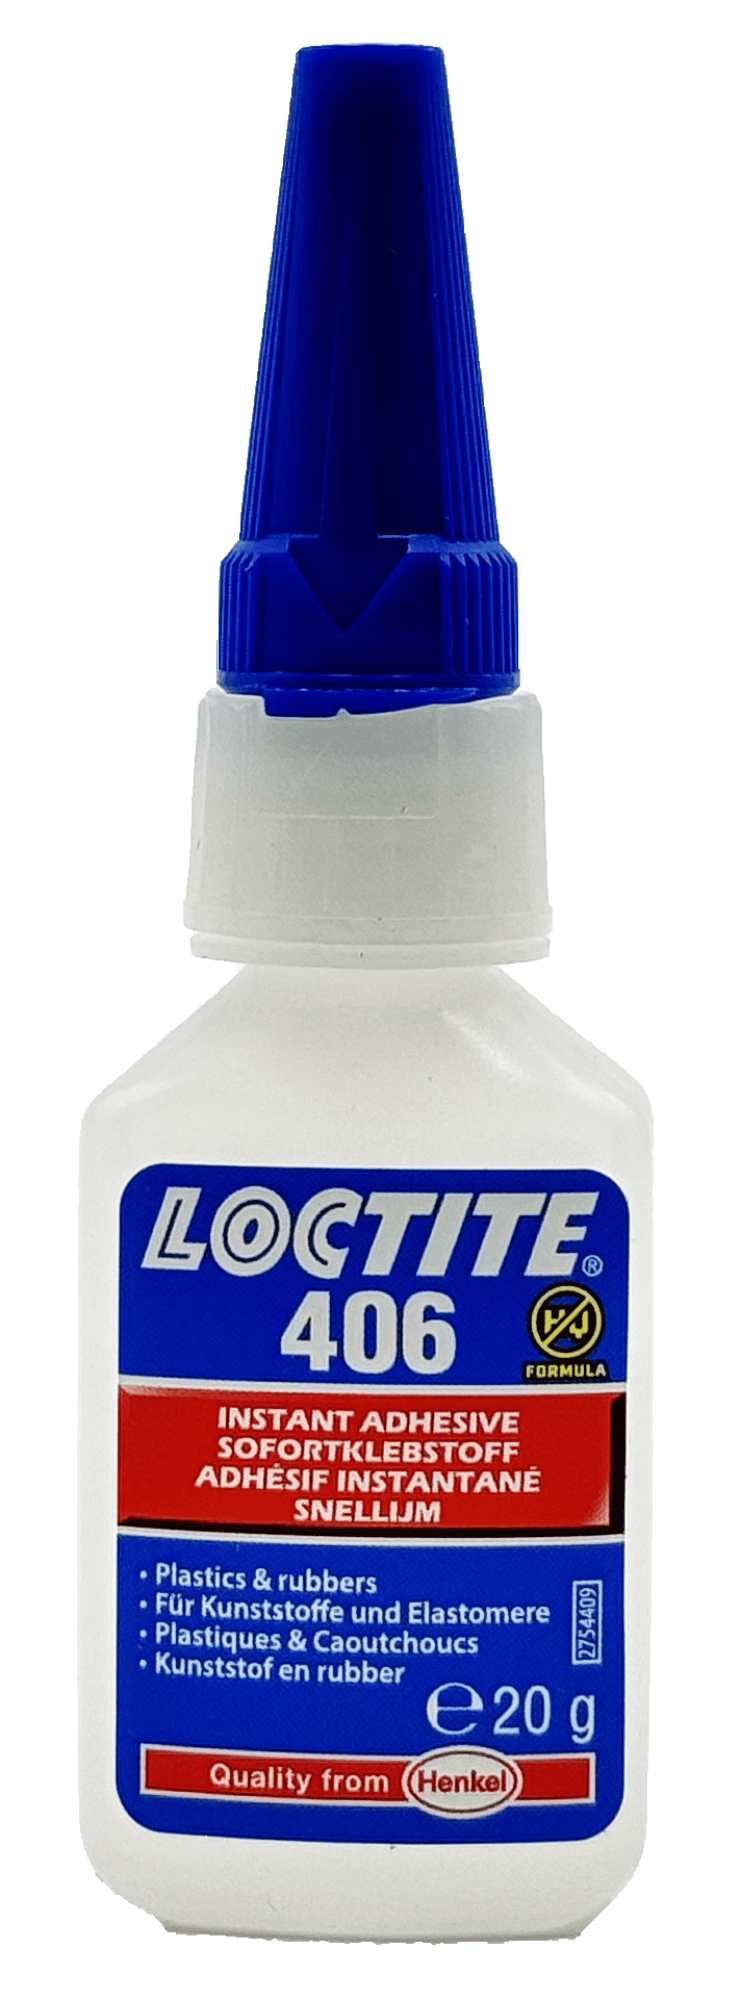 Henkel™ Loctite® Sofortklebstoff 406, 20 g, Transparent, Für Kunststoff und Gummi